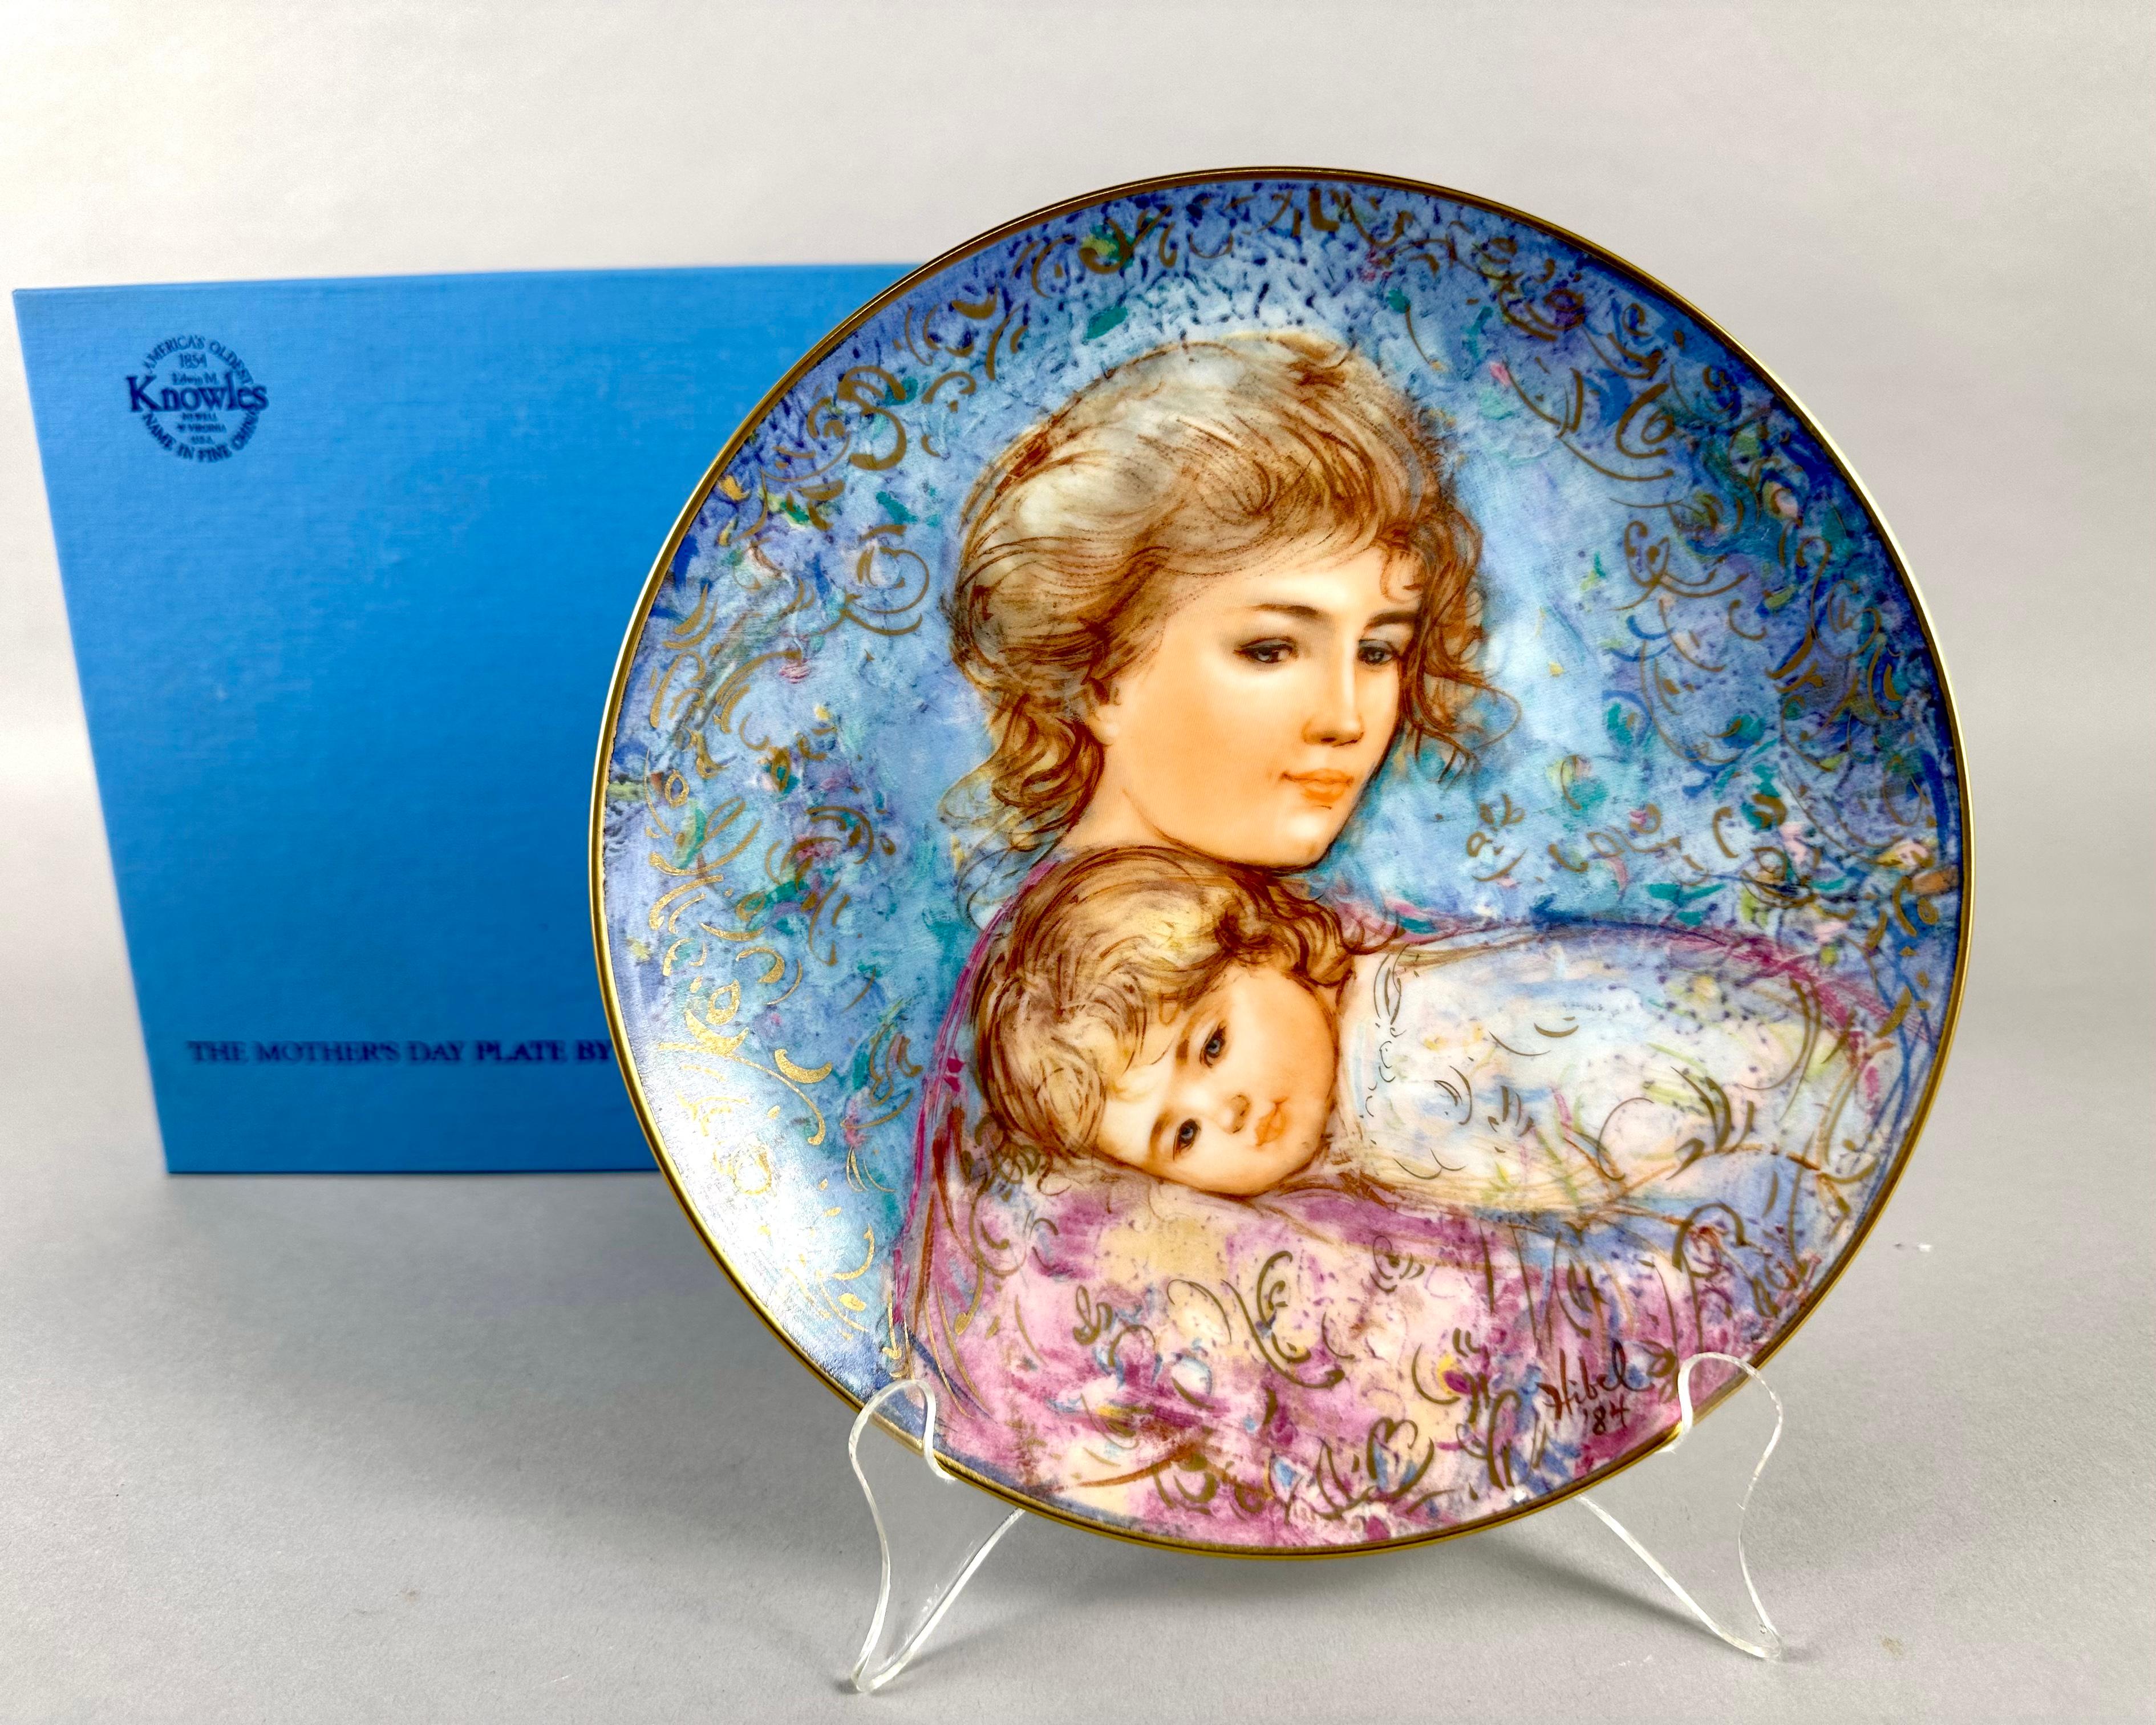 Vintage 1984 Edwin M. Knowles Mother's Day Limited Edition Collectible Plates created exclusively by Edna Hibel.

Ces assiettes en porcelaine fine sont jolies et portent le titre 